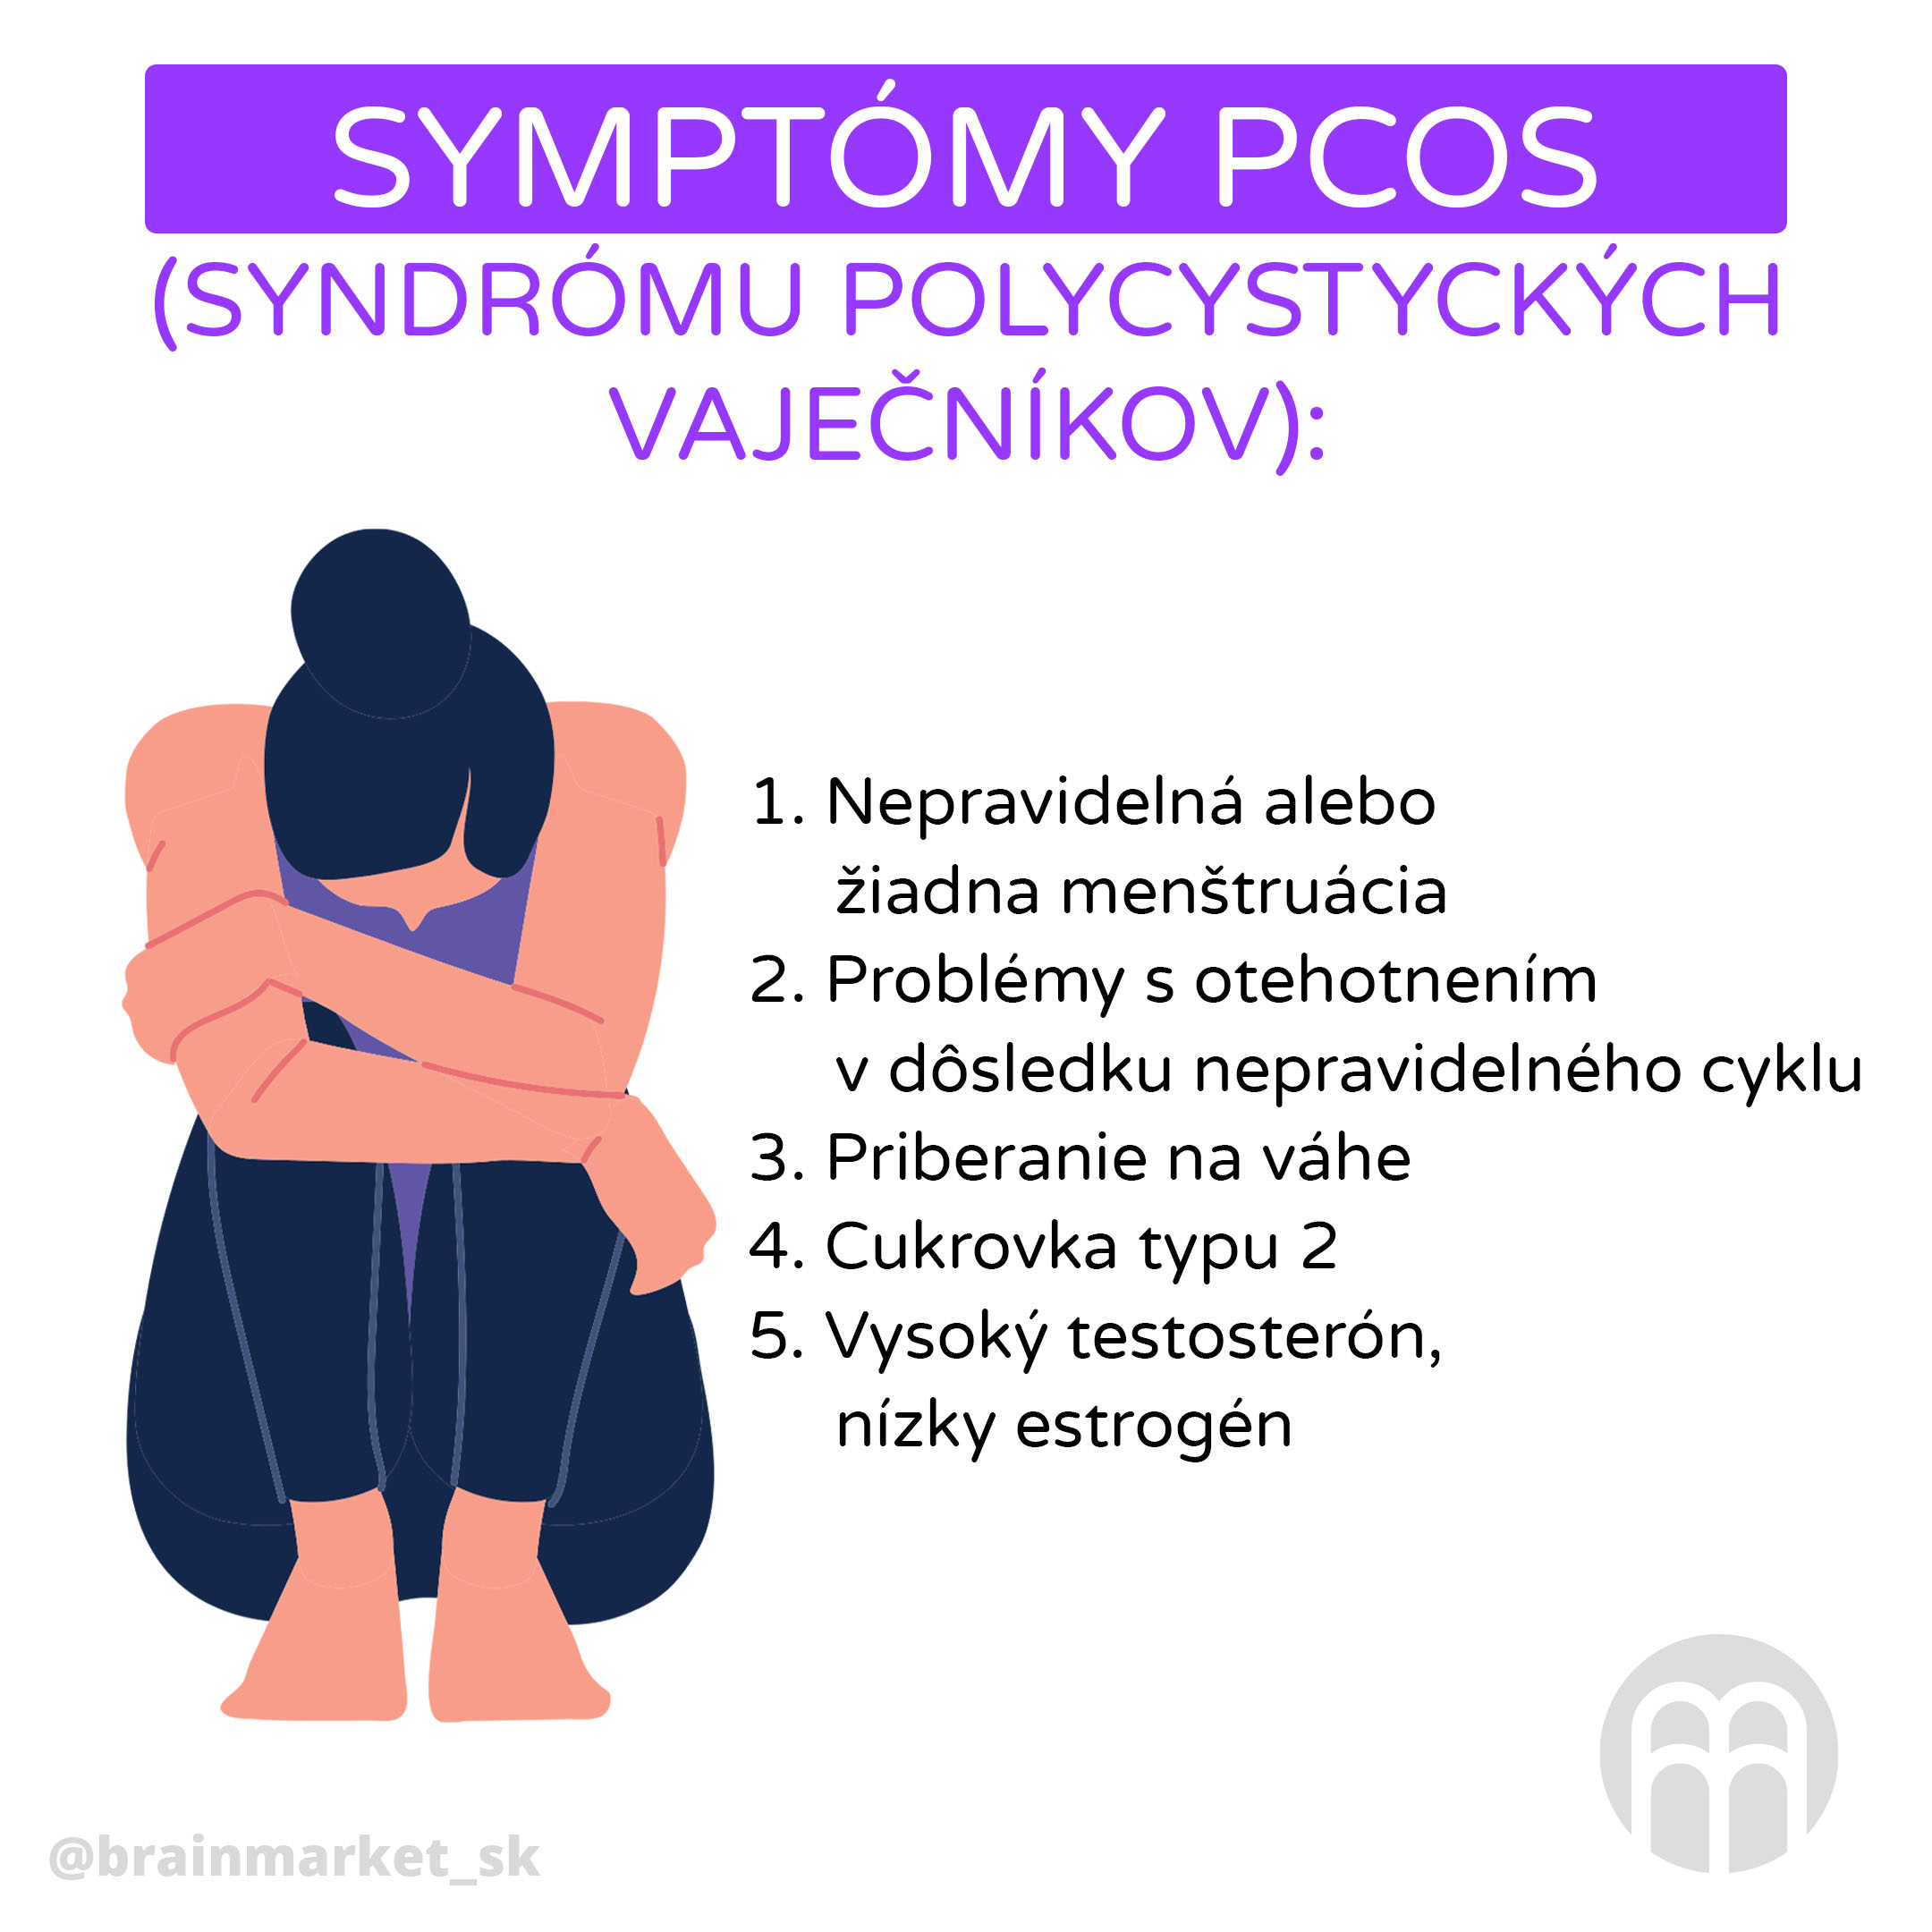 symptomy_pcos_infografika_brainmarket_cz